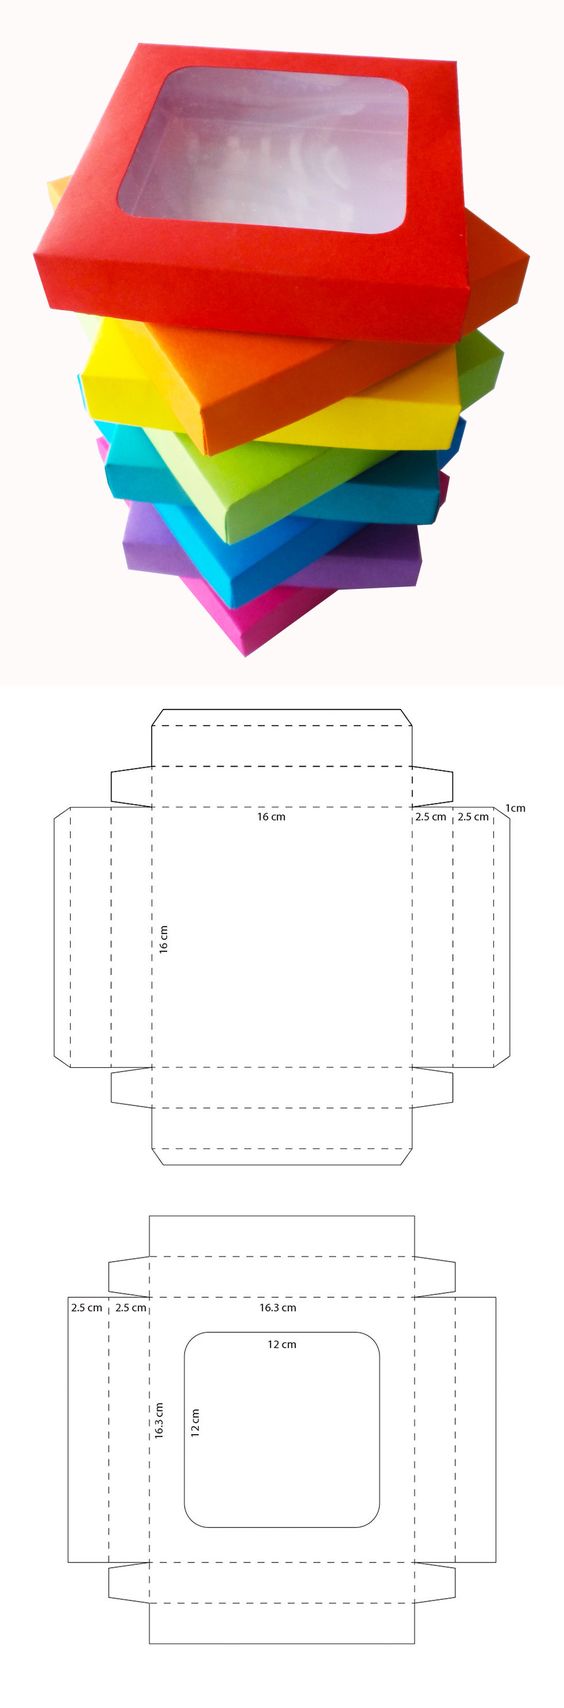 moldes de cajas para imprimir pdf